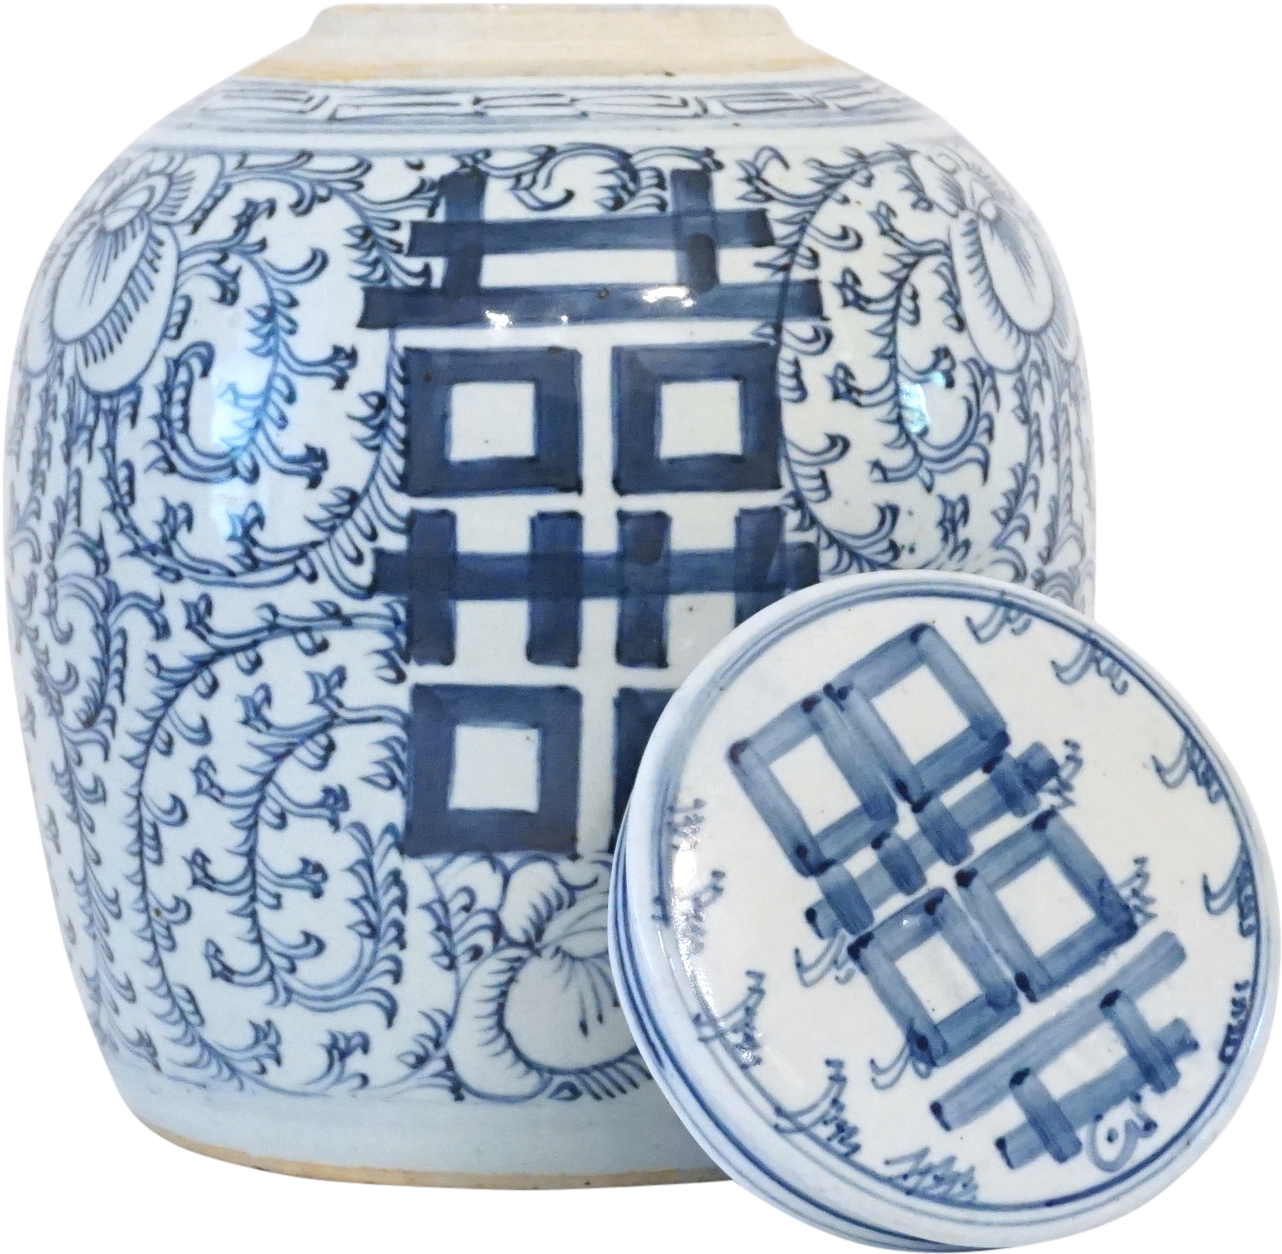 Guci keramik kebahagiaan ganda, porselen biru dan putih